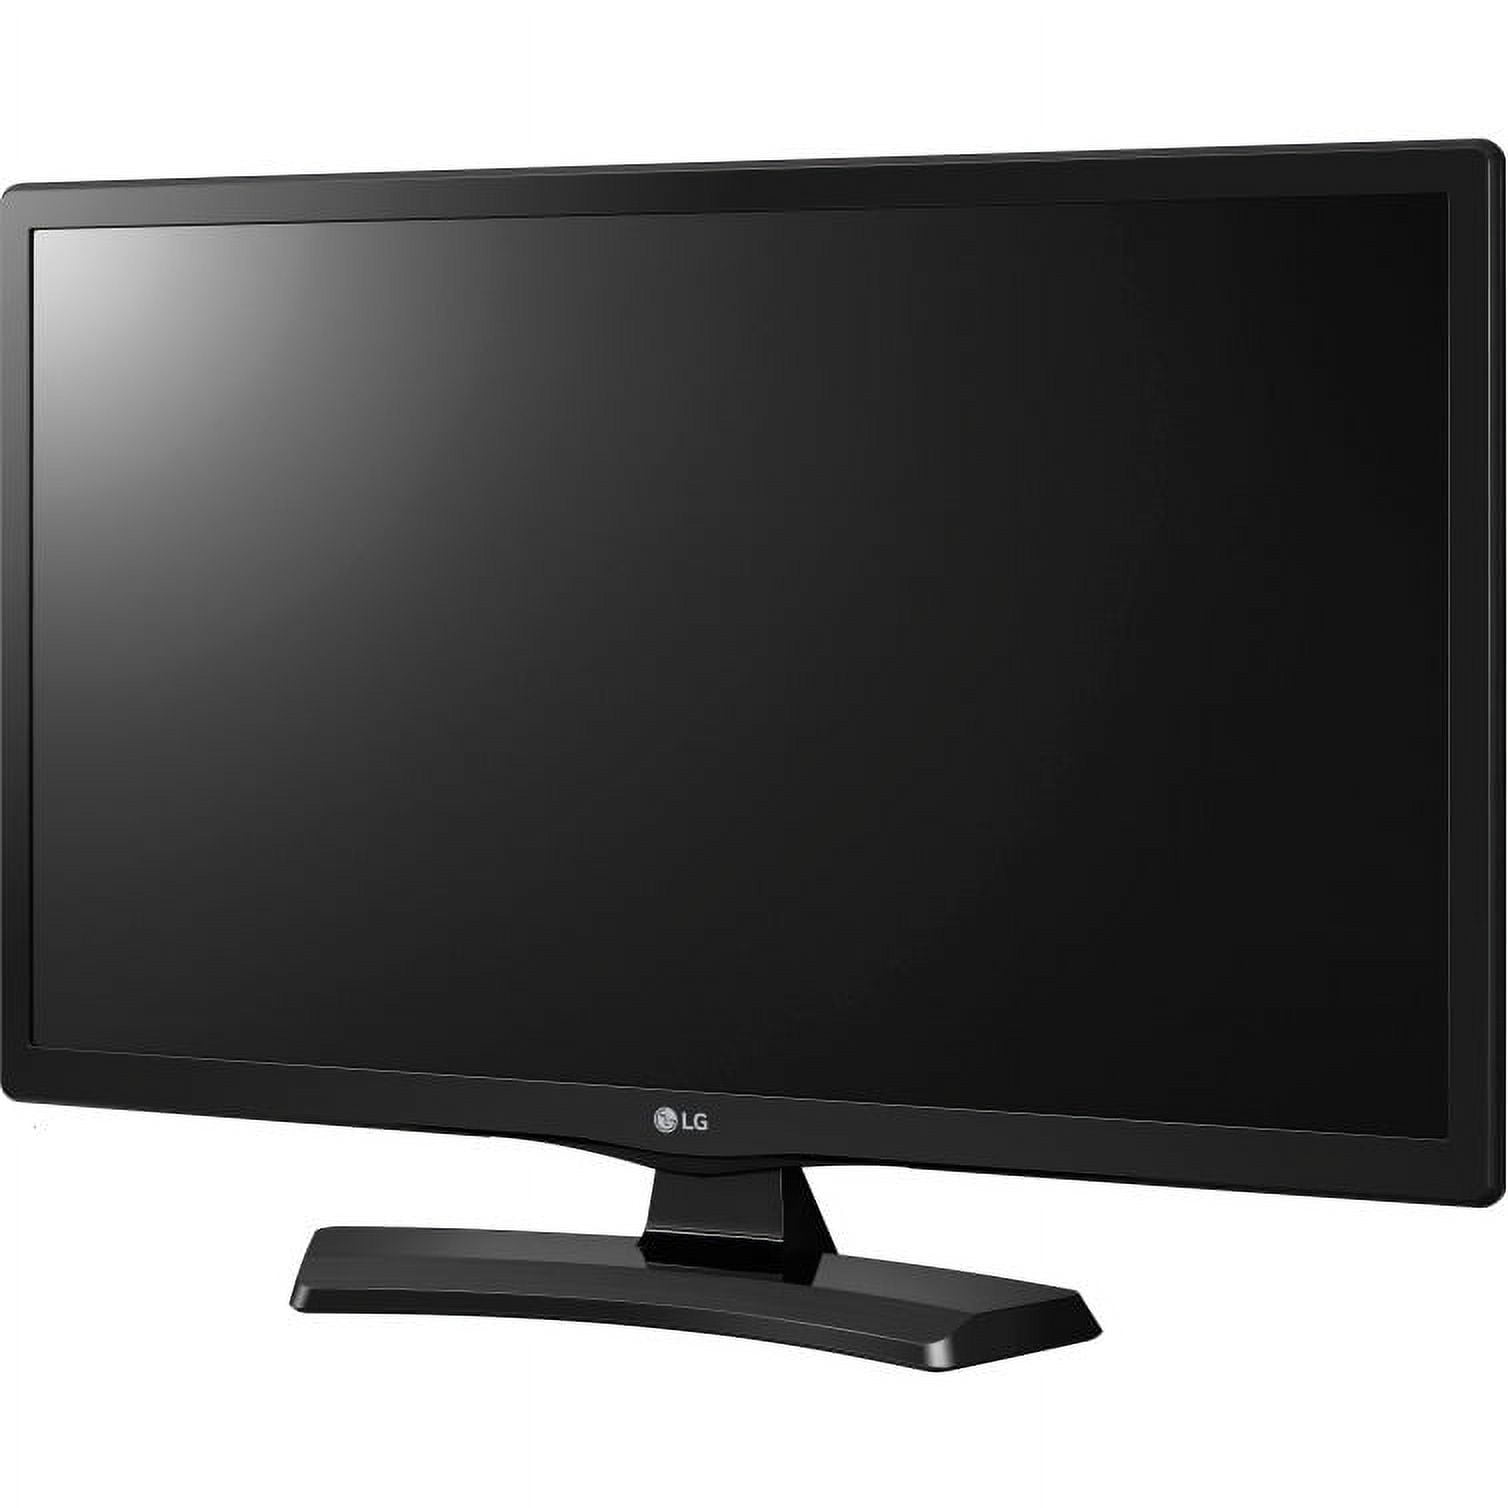 LG 22 Class HDTV (1080p) LED-LCD TV (22LJ4540)